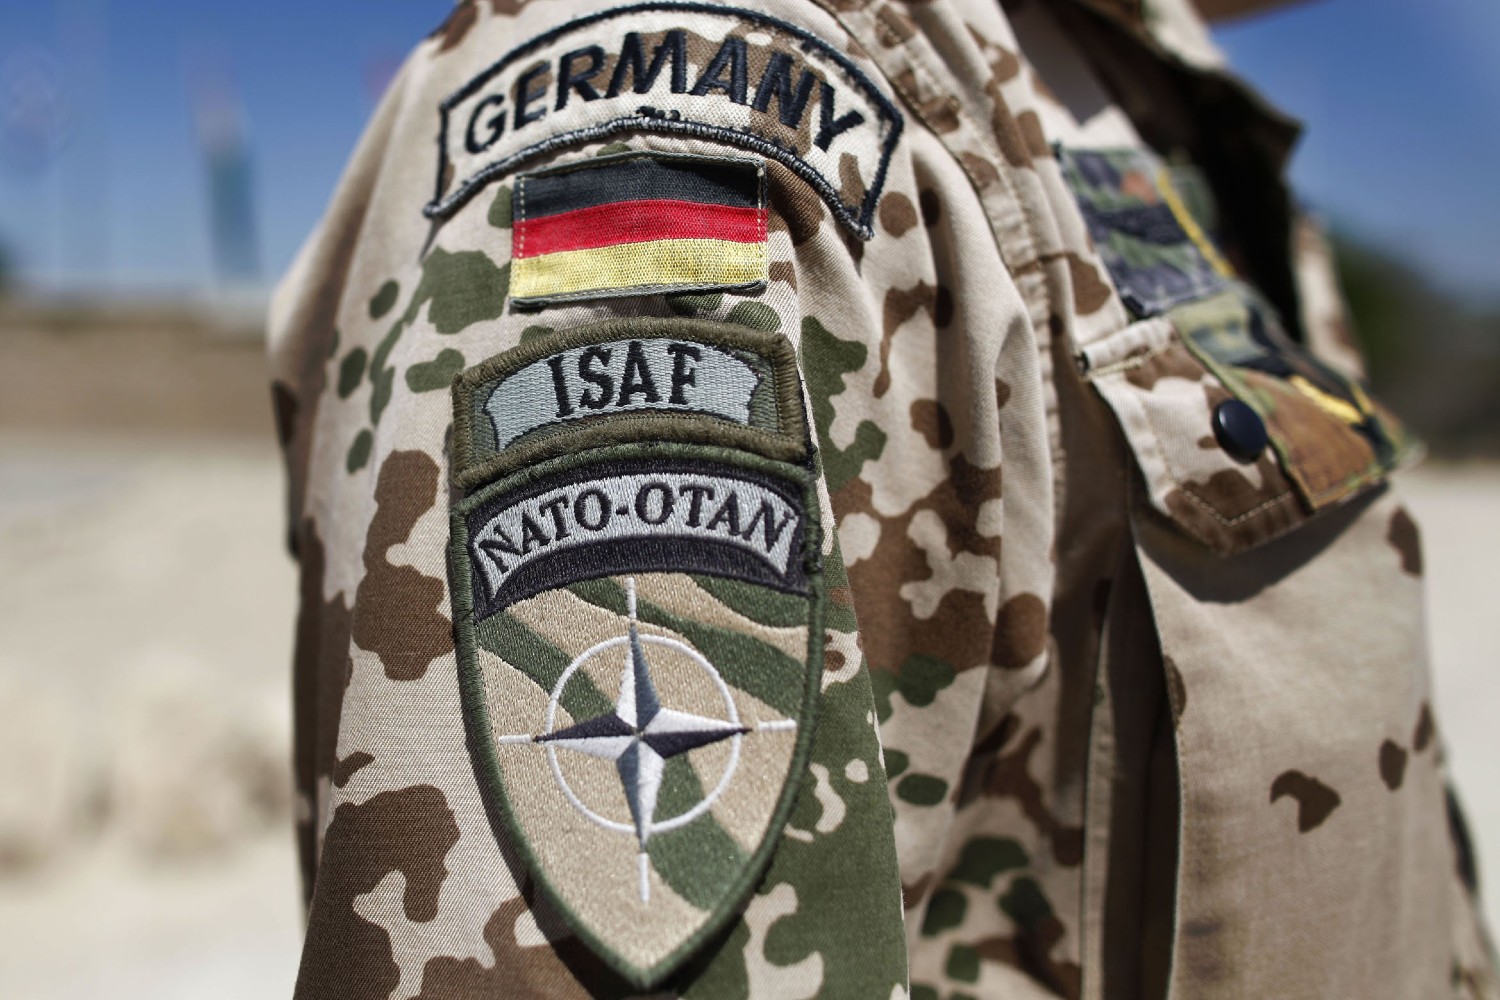 Беџеви заставе Немачке и НАТО-а на рукаву немачког војника стационираног у Авганистану у оквиру НАТО контигента (Фото: Anja Niedringhaus/AP)